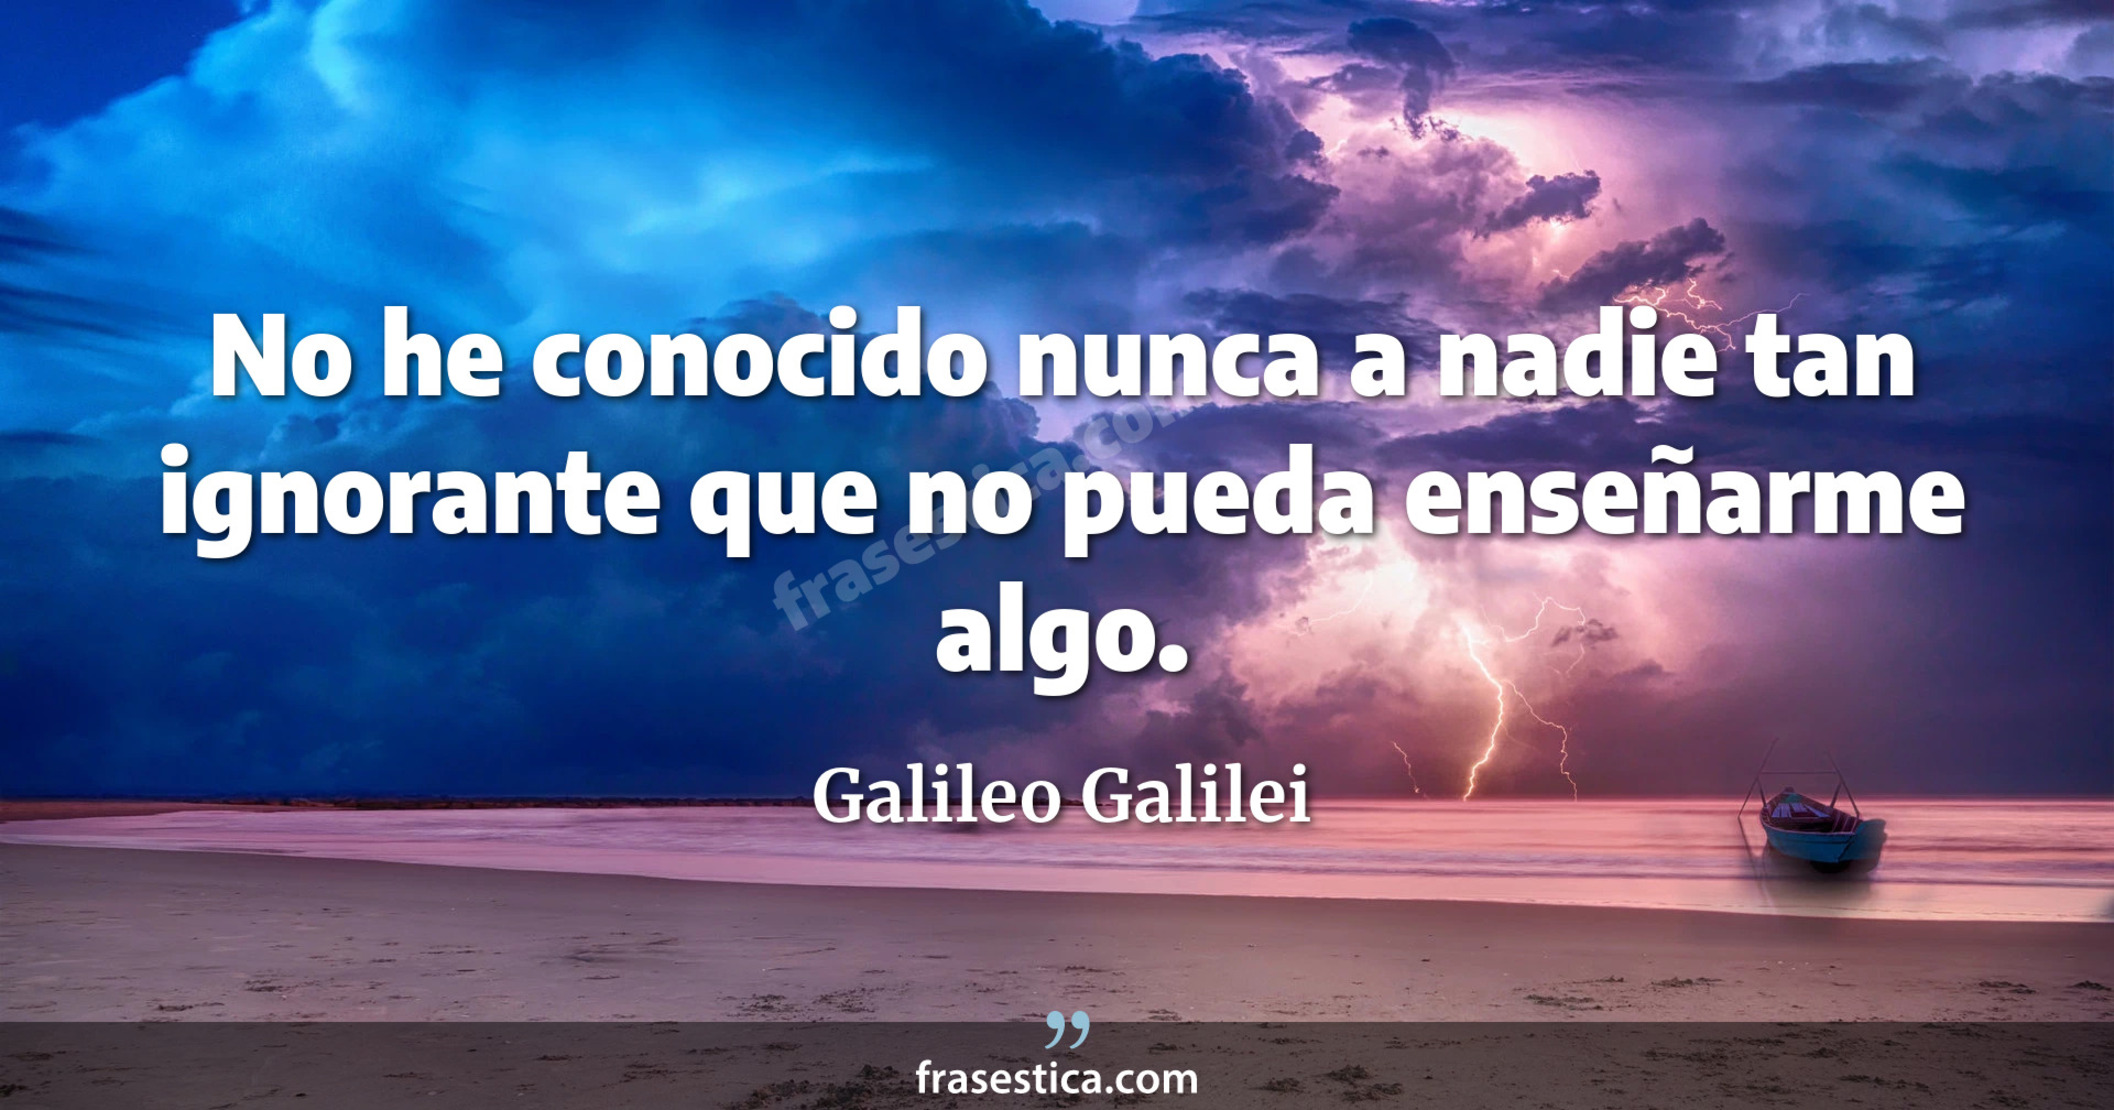 No he conocido nunca a nadie tan ignorante que no pueda enseñarme algo. - Galileo Galilei